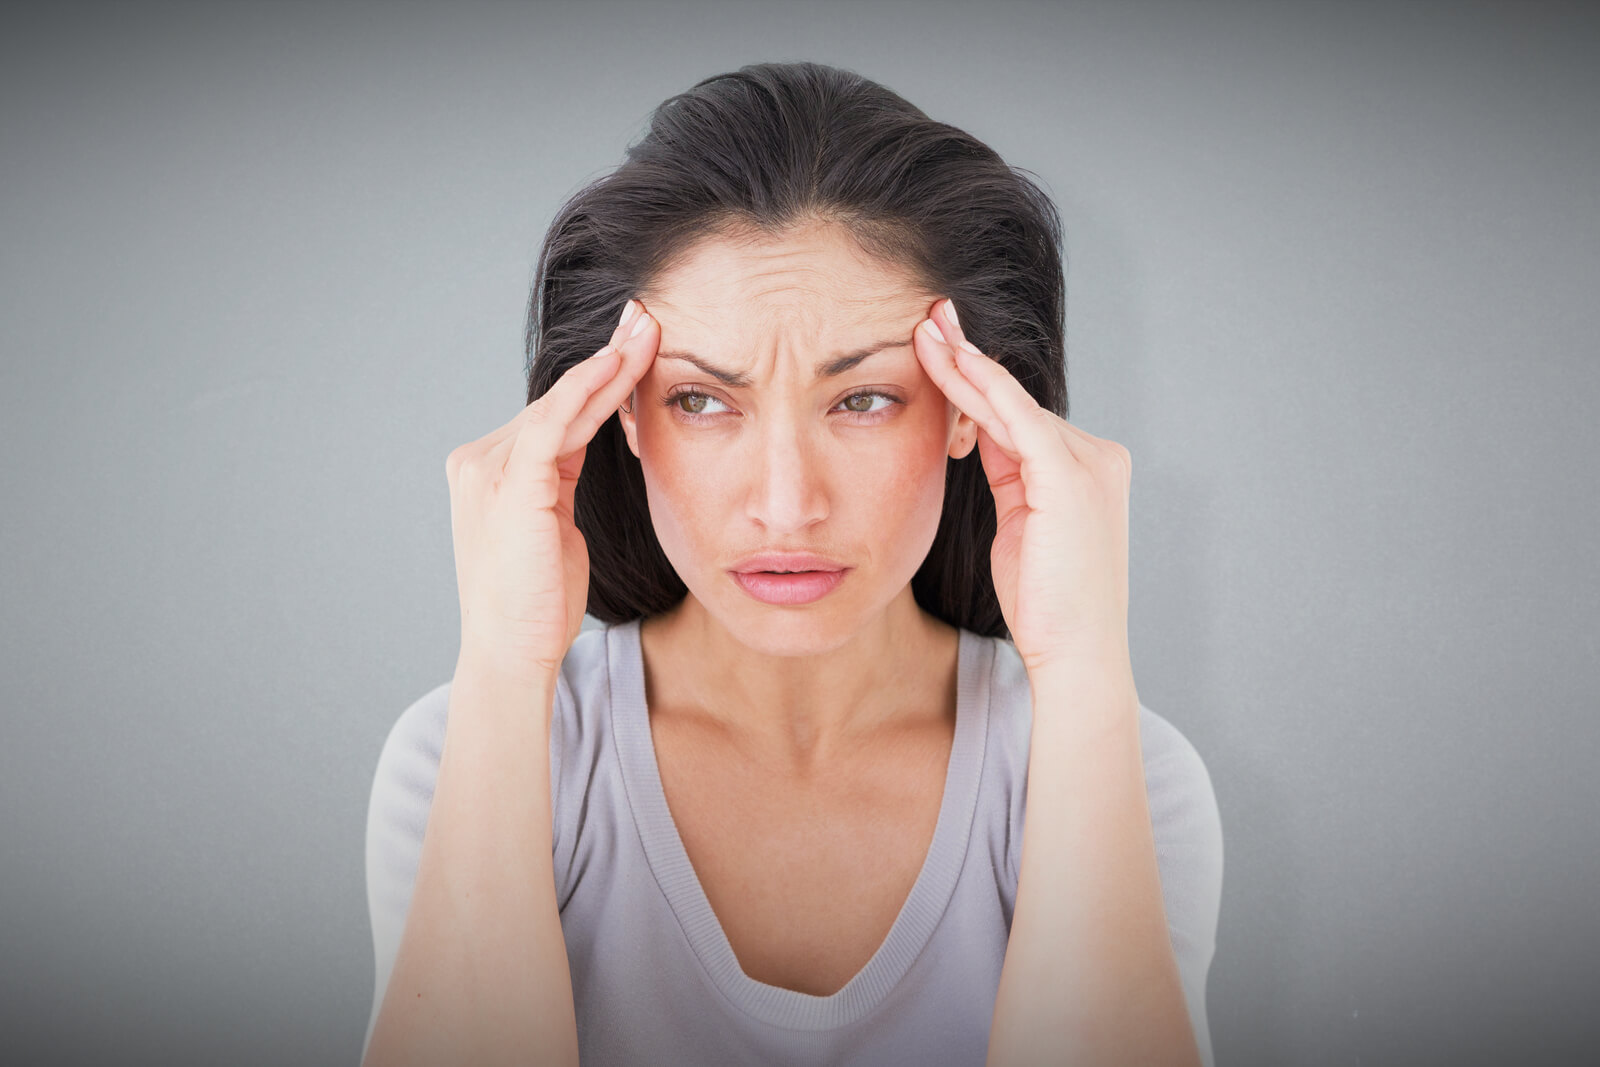 How can Vestibular Migraine Cause Vertigo